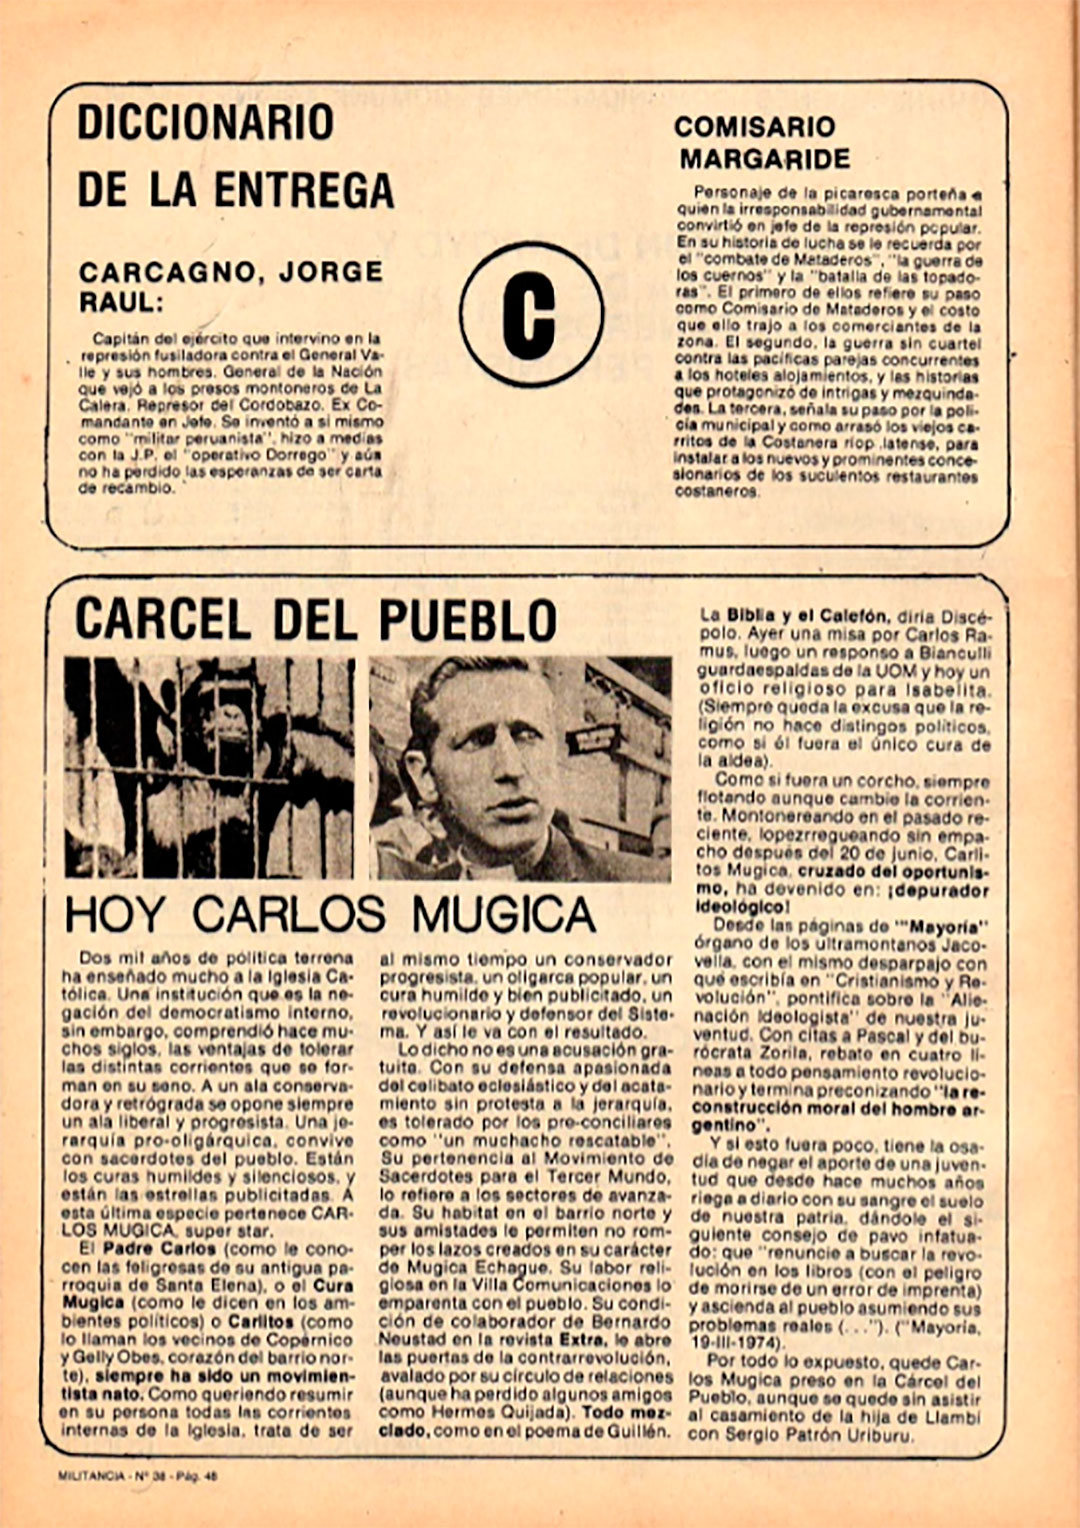  Amenaza contra Carlos Mugica aparecida en la revista Militancia.